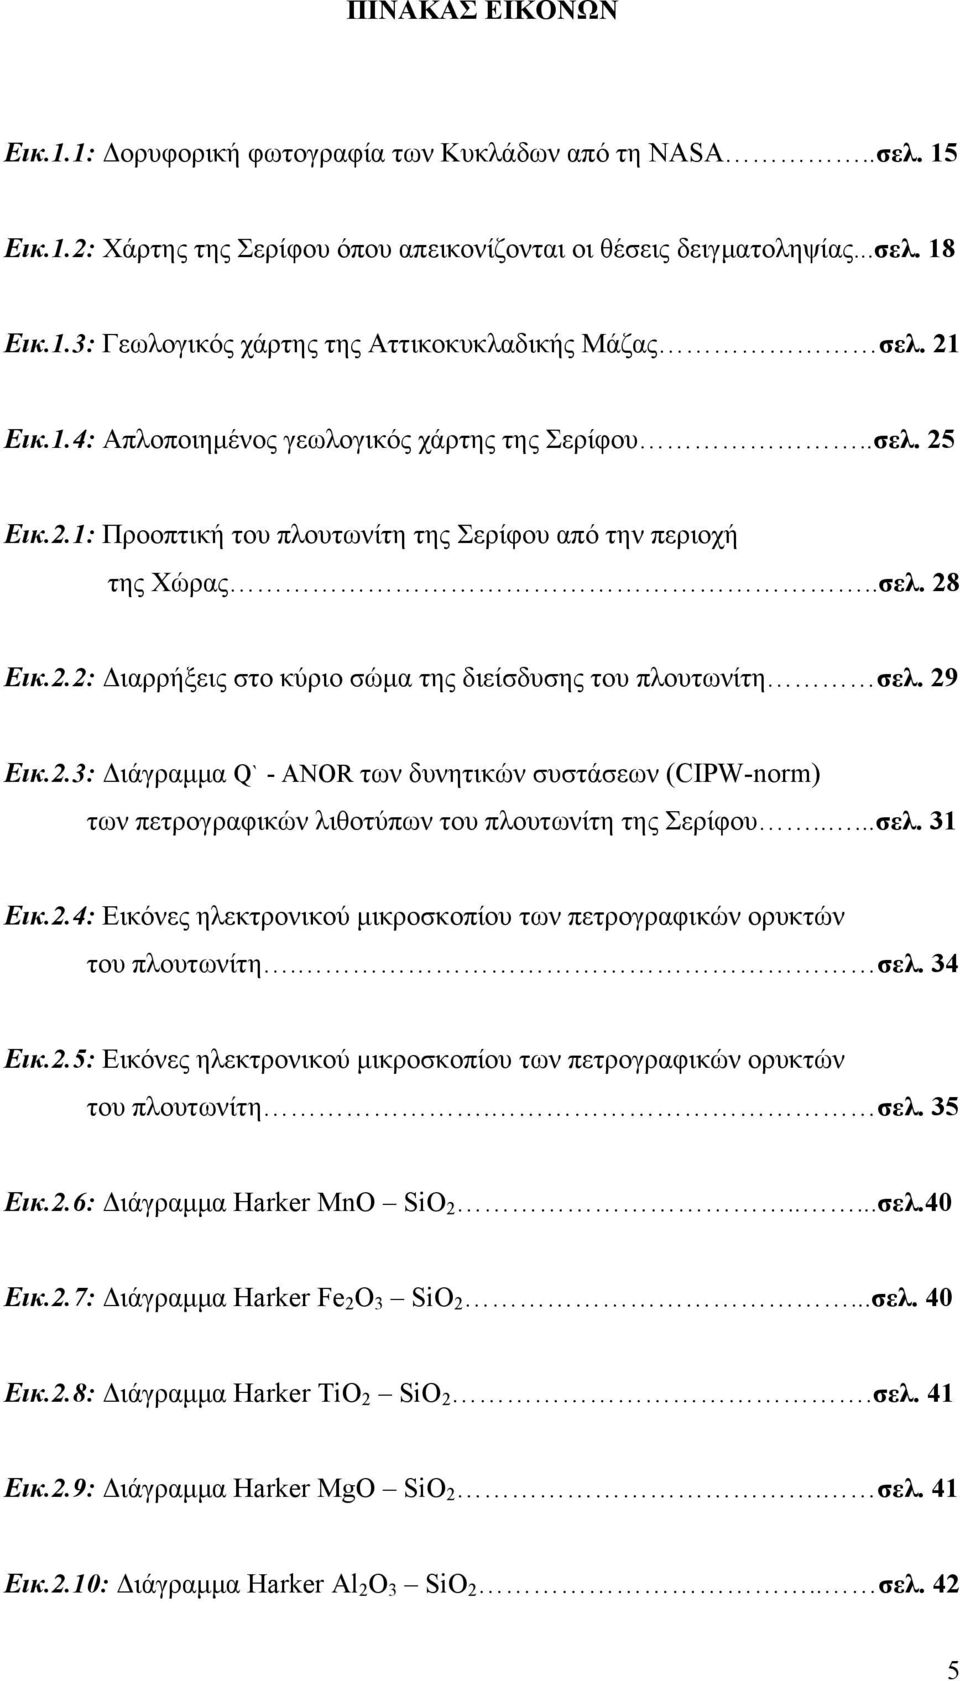 29 Εικ.2.3: Διάγραμμα Q` - ANOR των δυνητικών συστάσεων (CIPW-norm) των πετρογραφικών λιθοτύπων του πλουτωνίτη της Σερίφου.....σελ. 31 Εικ.2.4: Εικόνες ηλεκτρονικού μικροσκοπίου των πετρογραφικών ορυκτών του πλουτωνίτη.